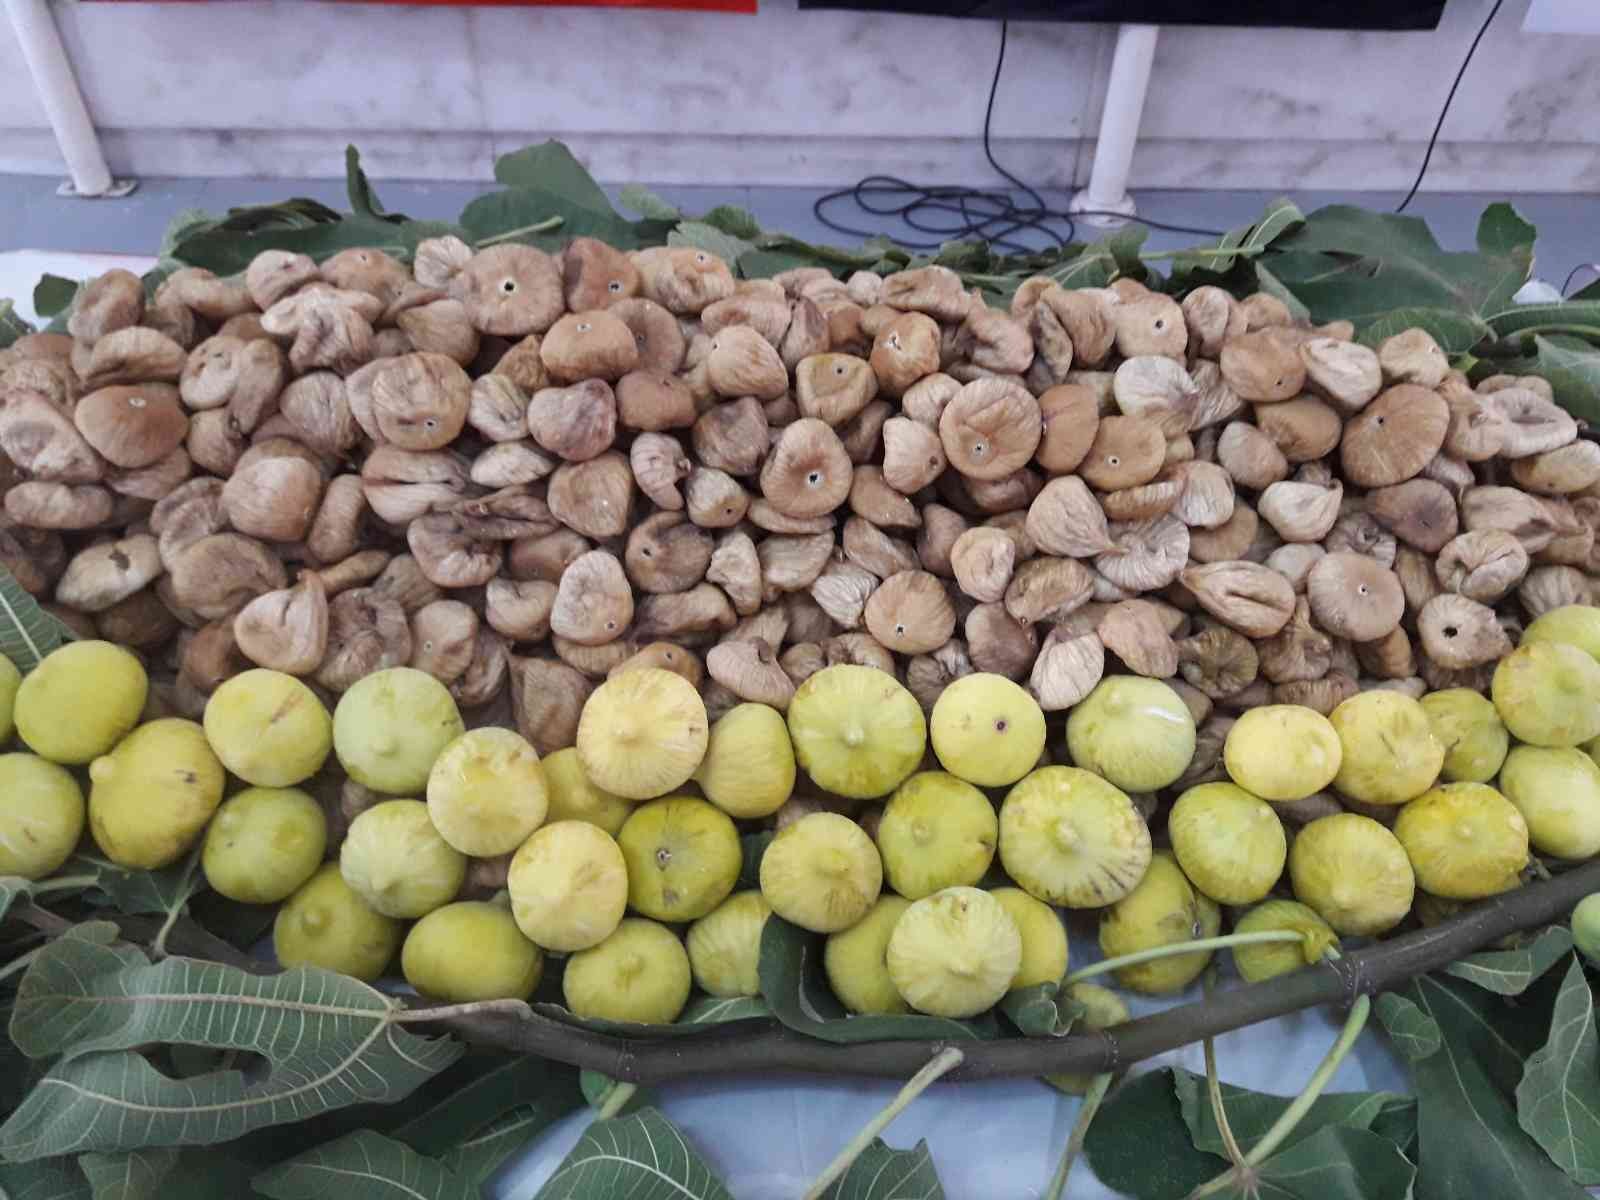 Söke’de aşırı sıcaktan etkilenen 34 incir üreticisine ödeme yapılacak #aydin